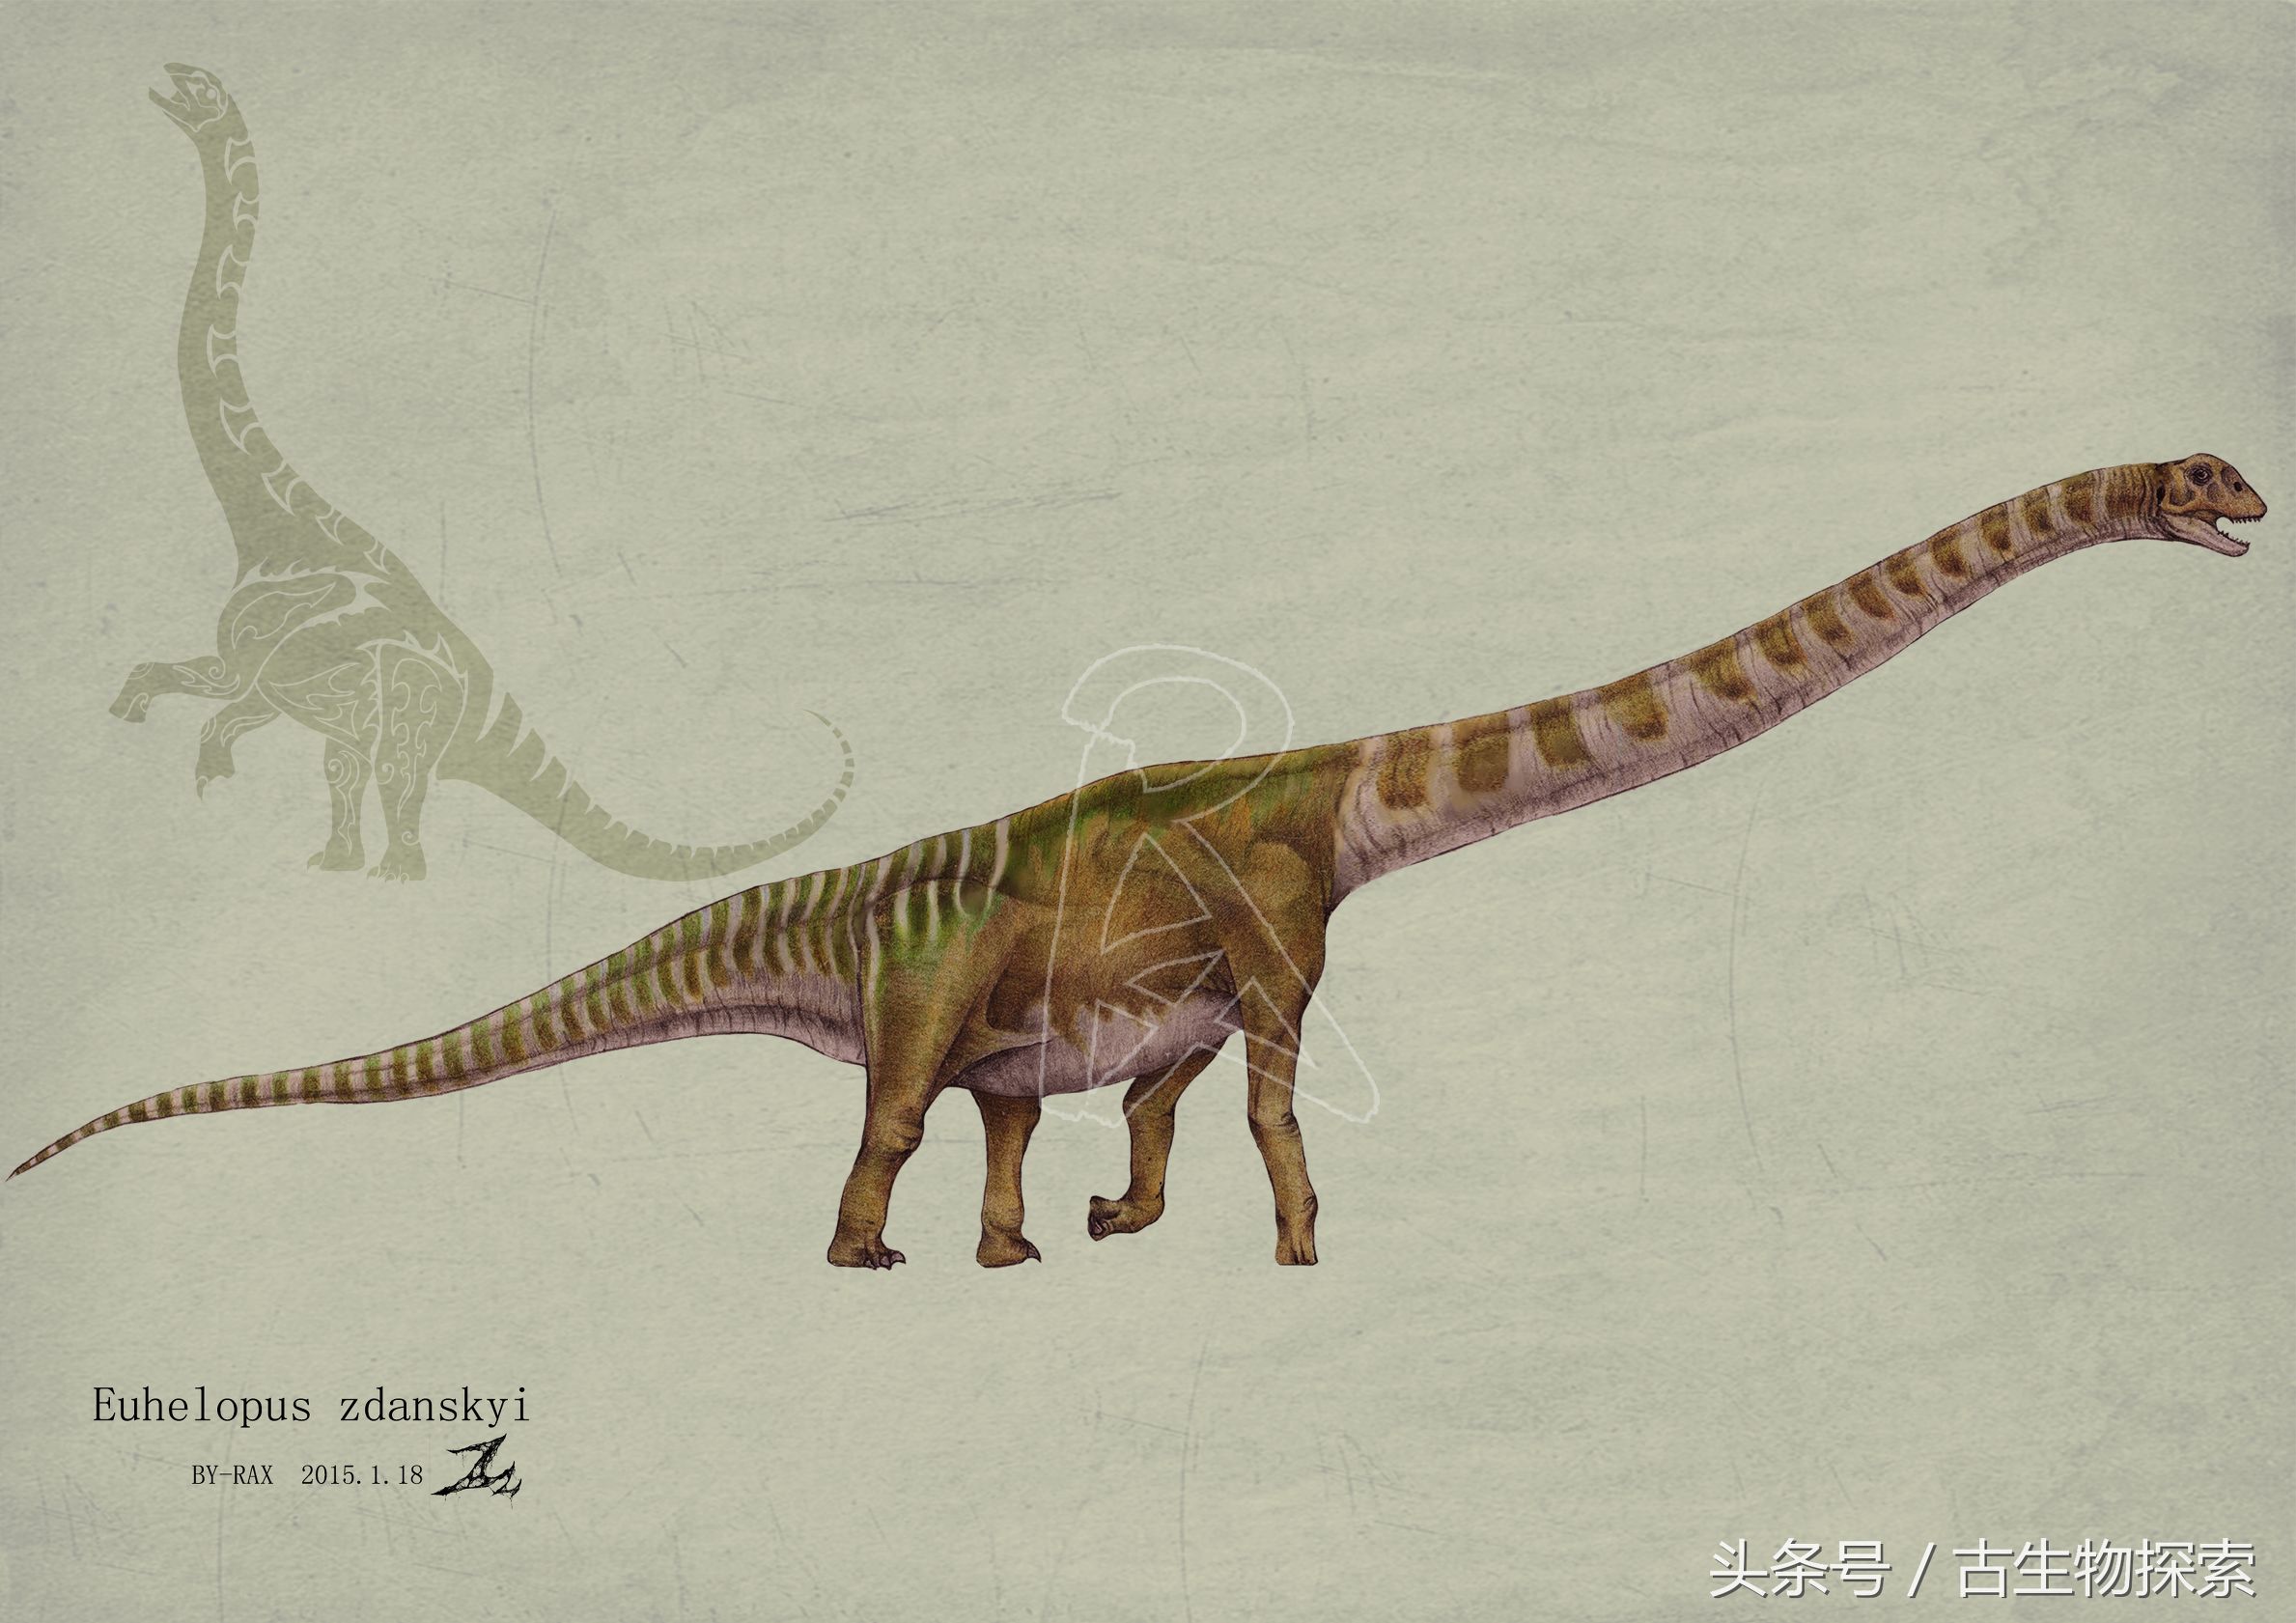 绘图者rax博士截至目前,百年中国已经发现了超过70种蜥脚类恐龙,大恐